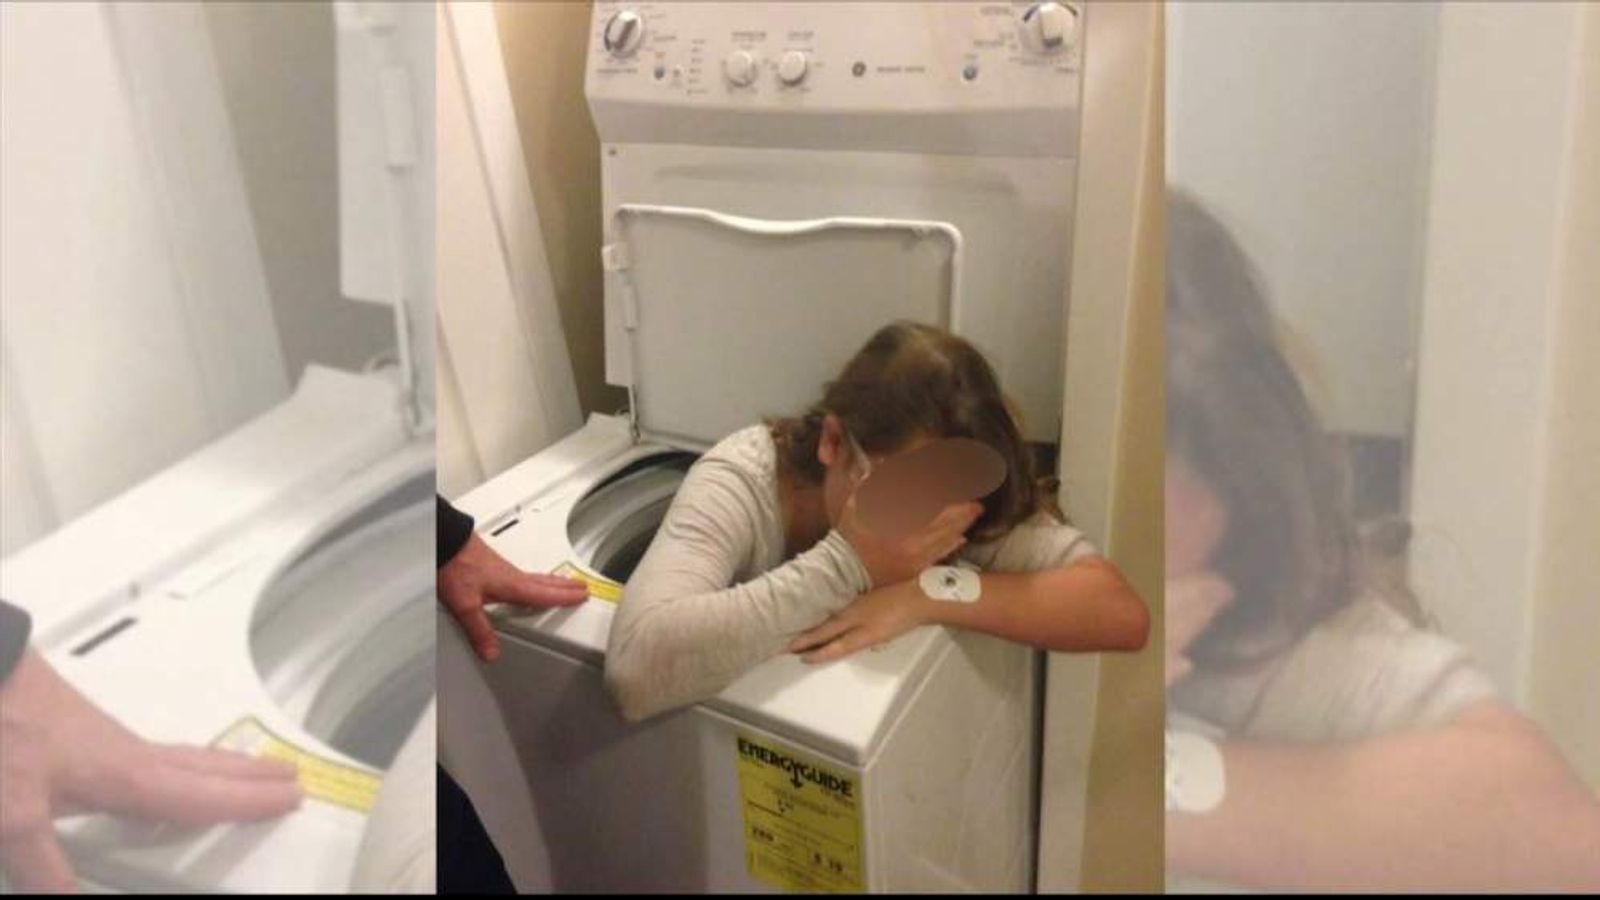 Сводная сестра застряла в стиральной машине но брат не стал спешить её освобождать